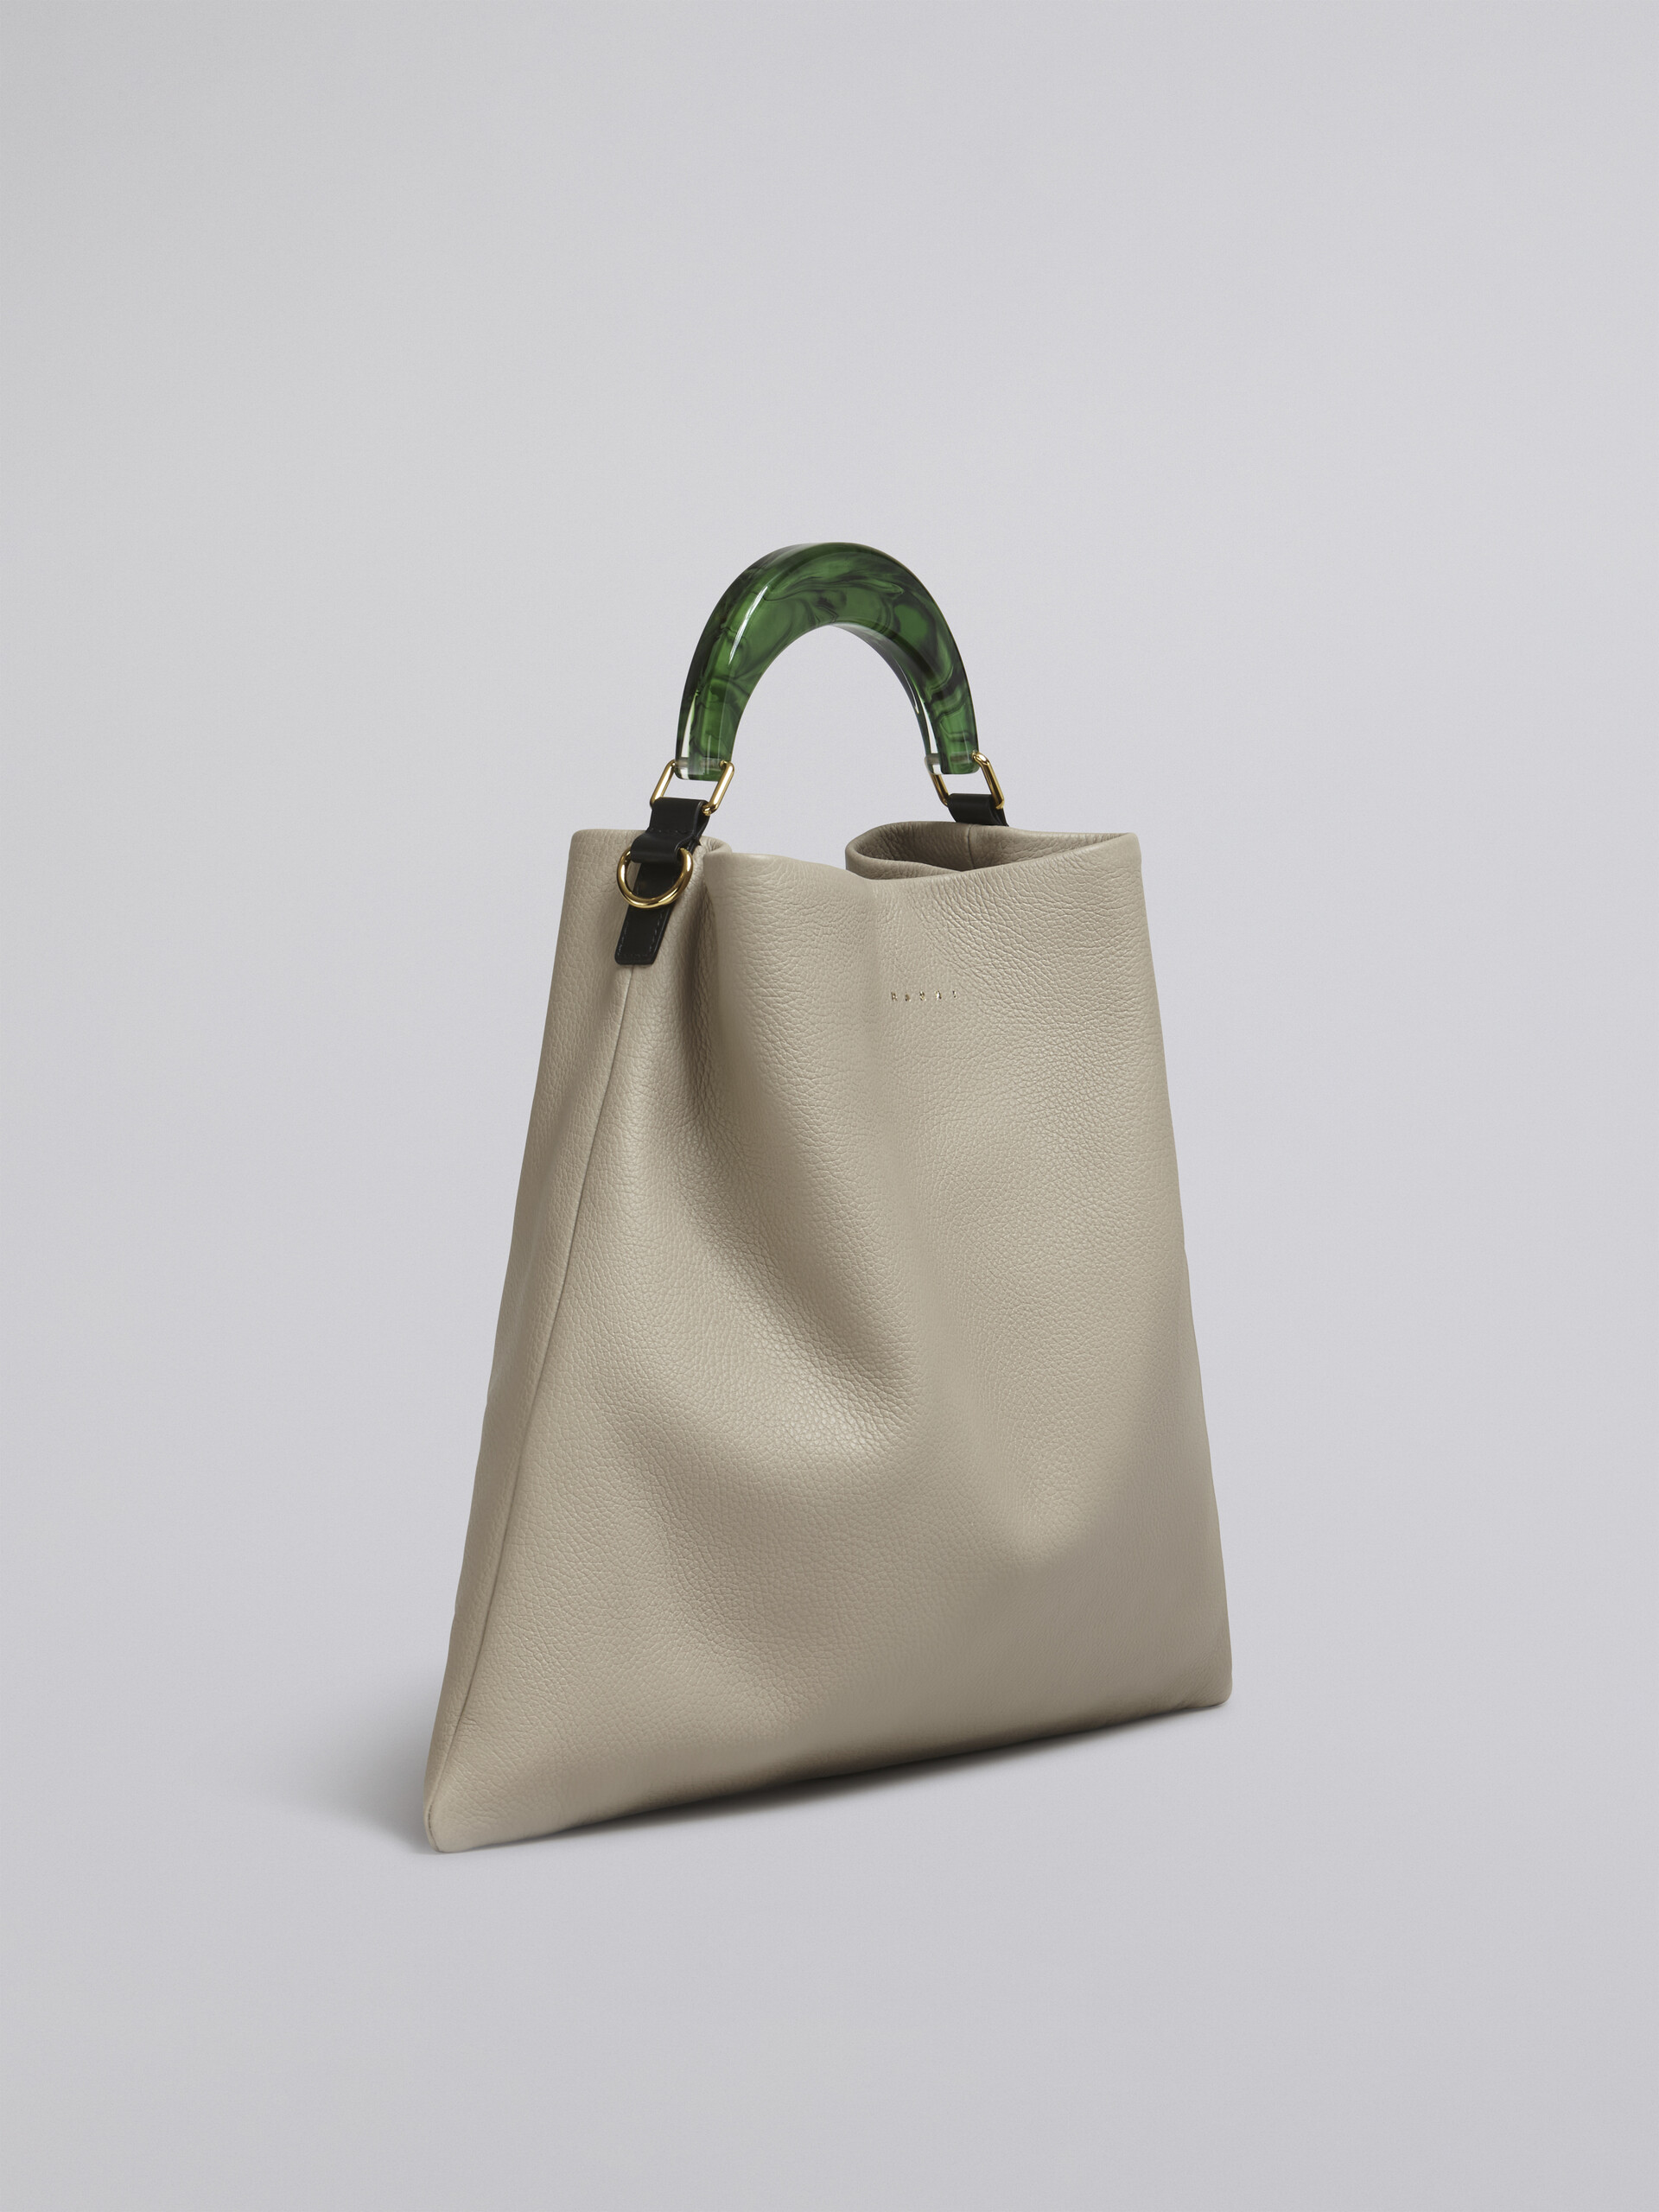 Venice Medium Bag in beige leather - Shoulder Bag - Image 6